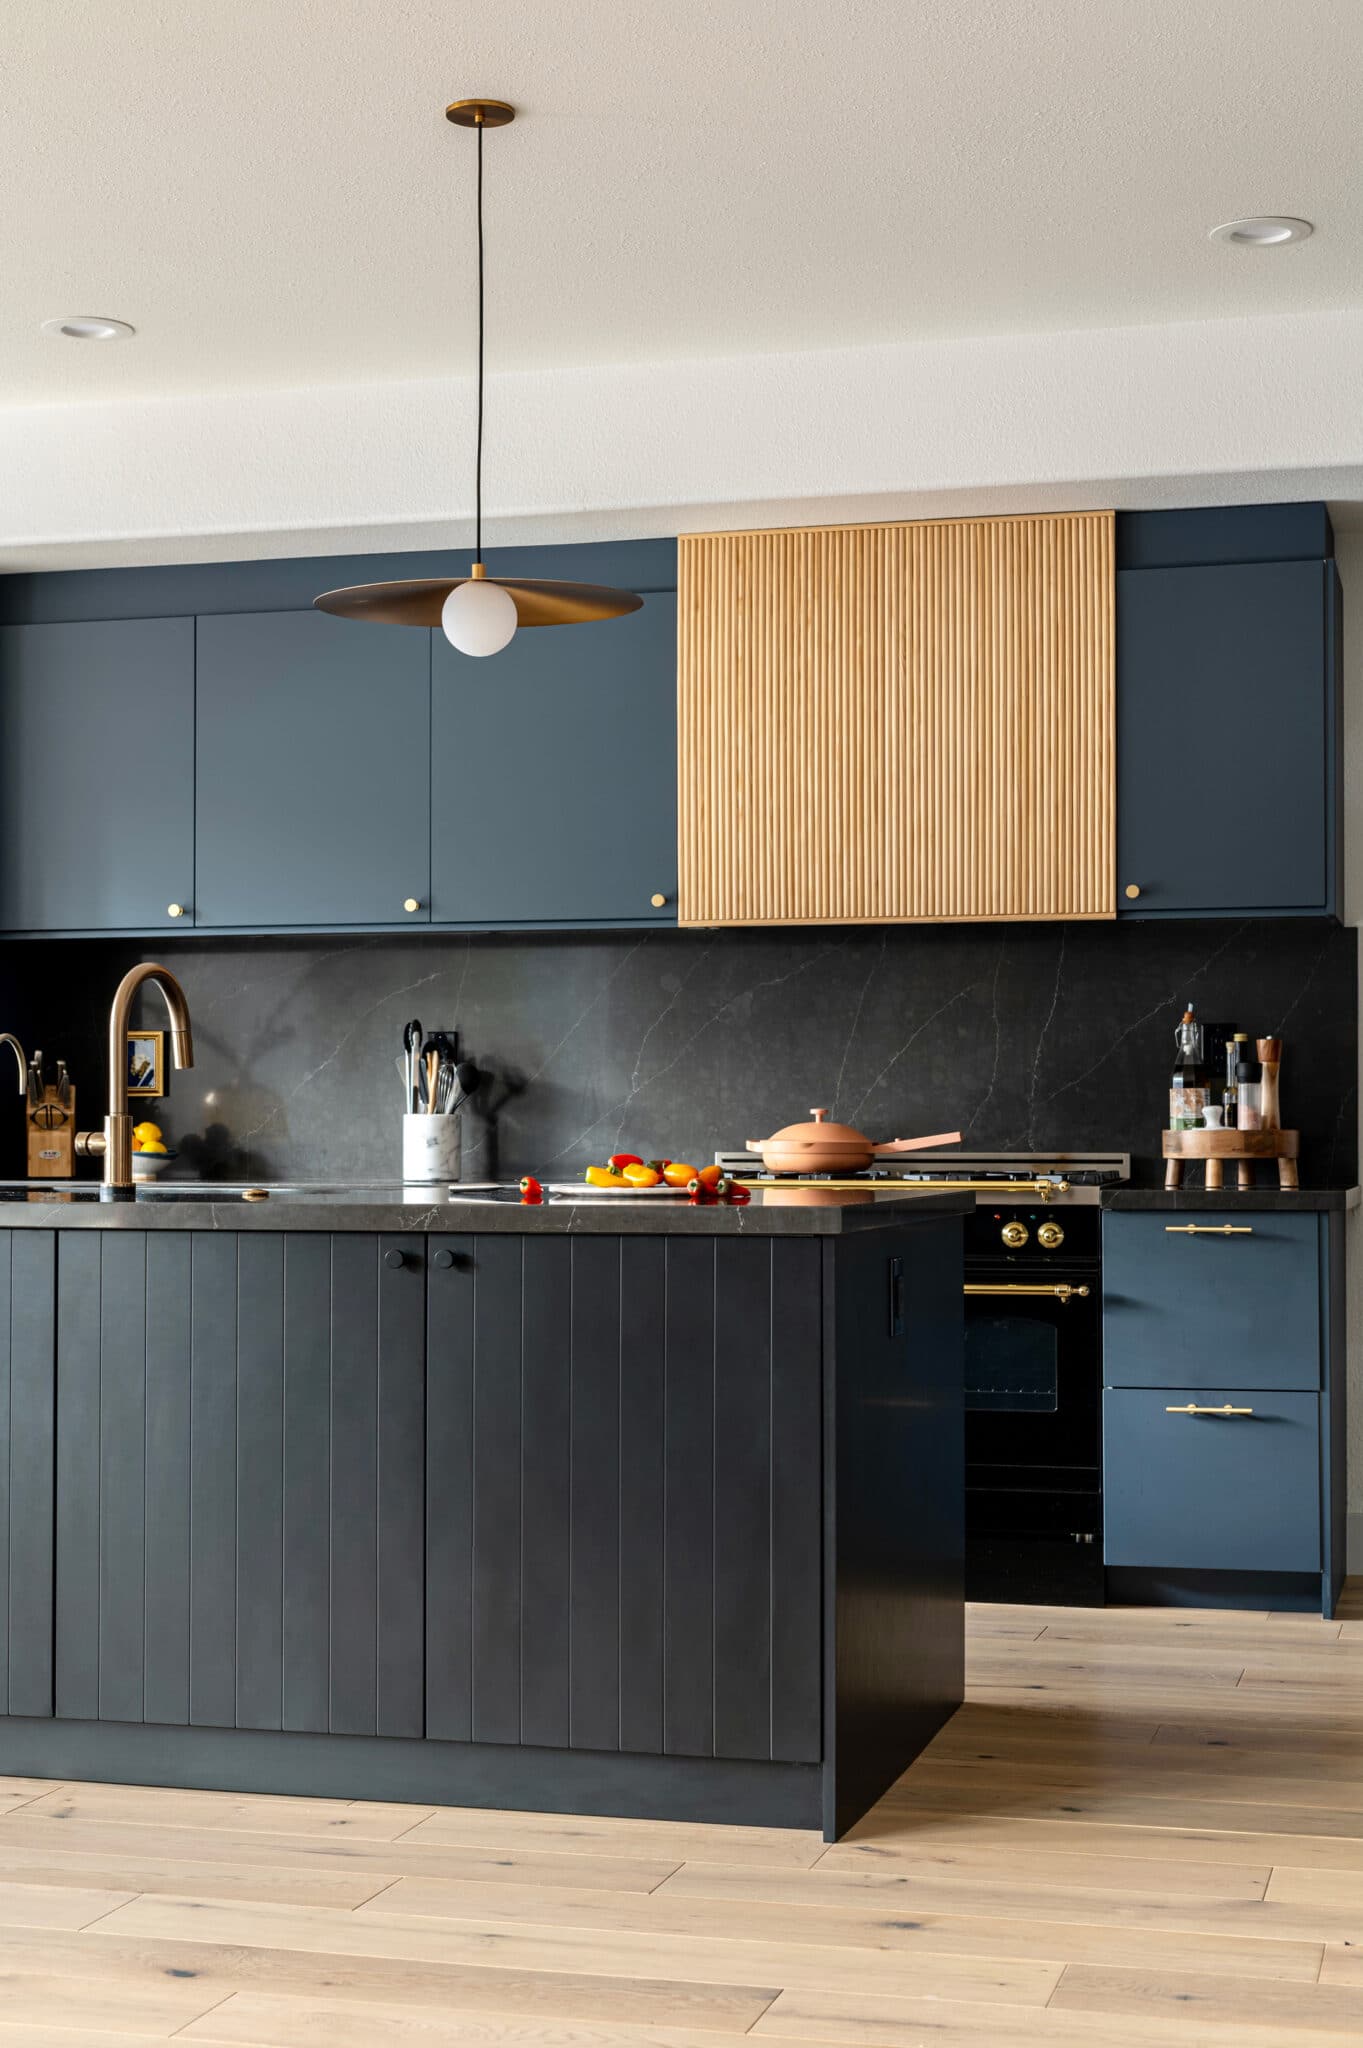 Inside a Kitchen With Beautiful Dark Kitchen Cabinets - SemiStories